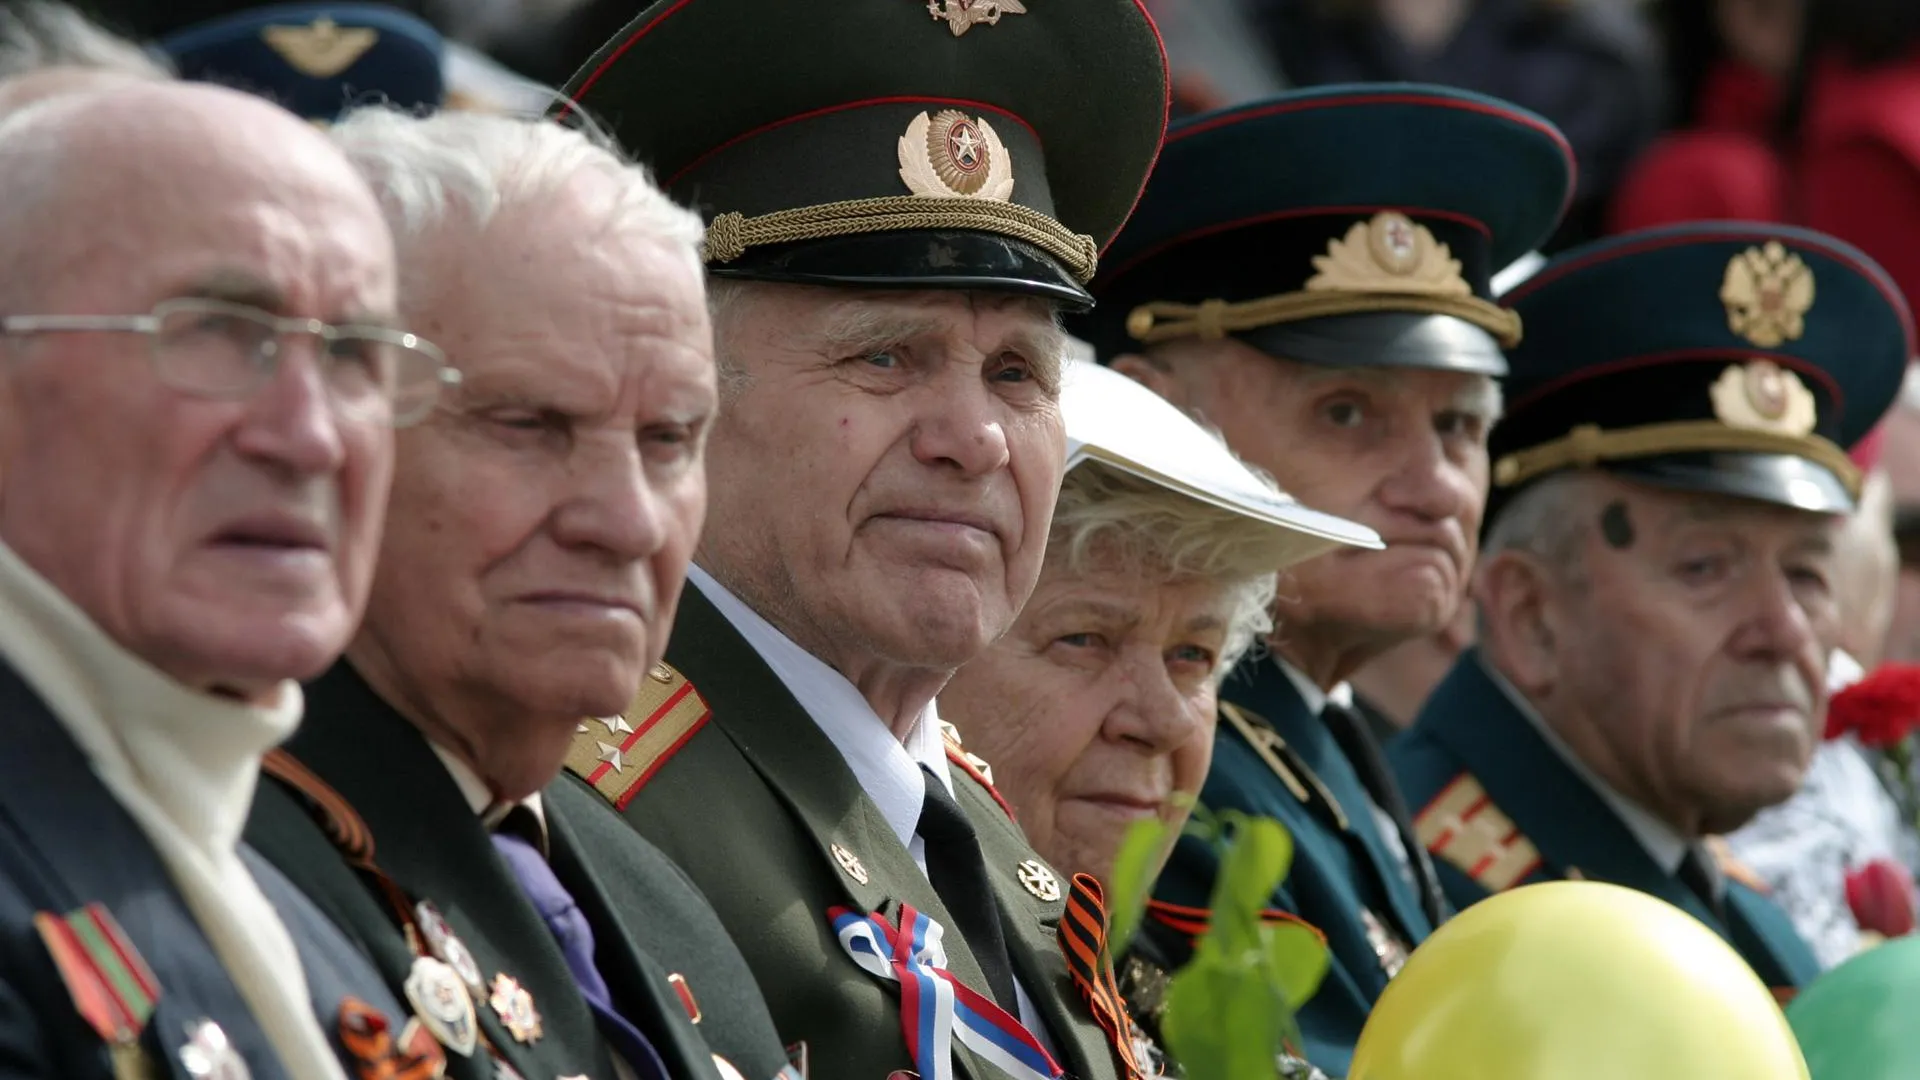 Мособлгаз запустил акцию для ветеранов ко Дню Победы